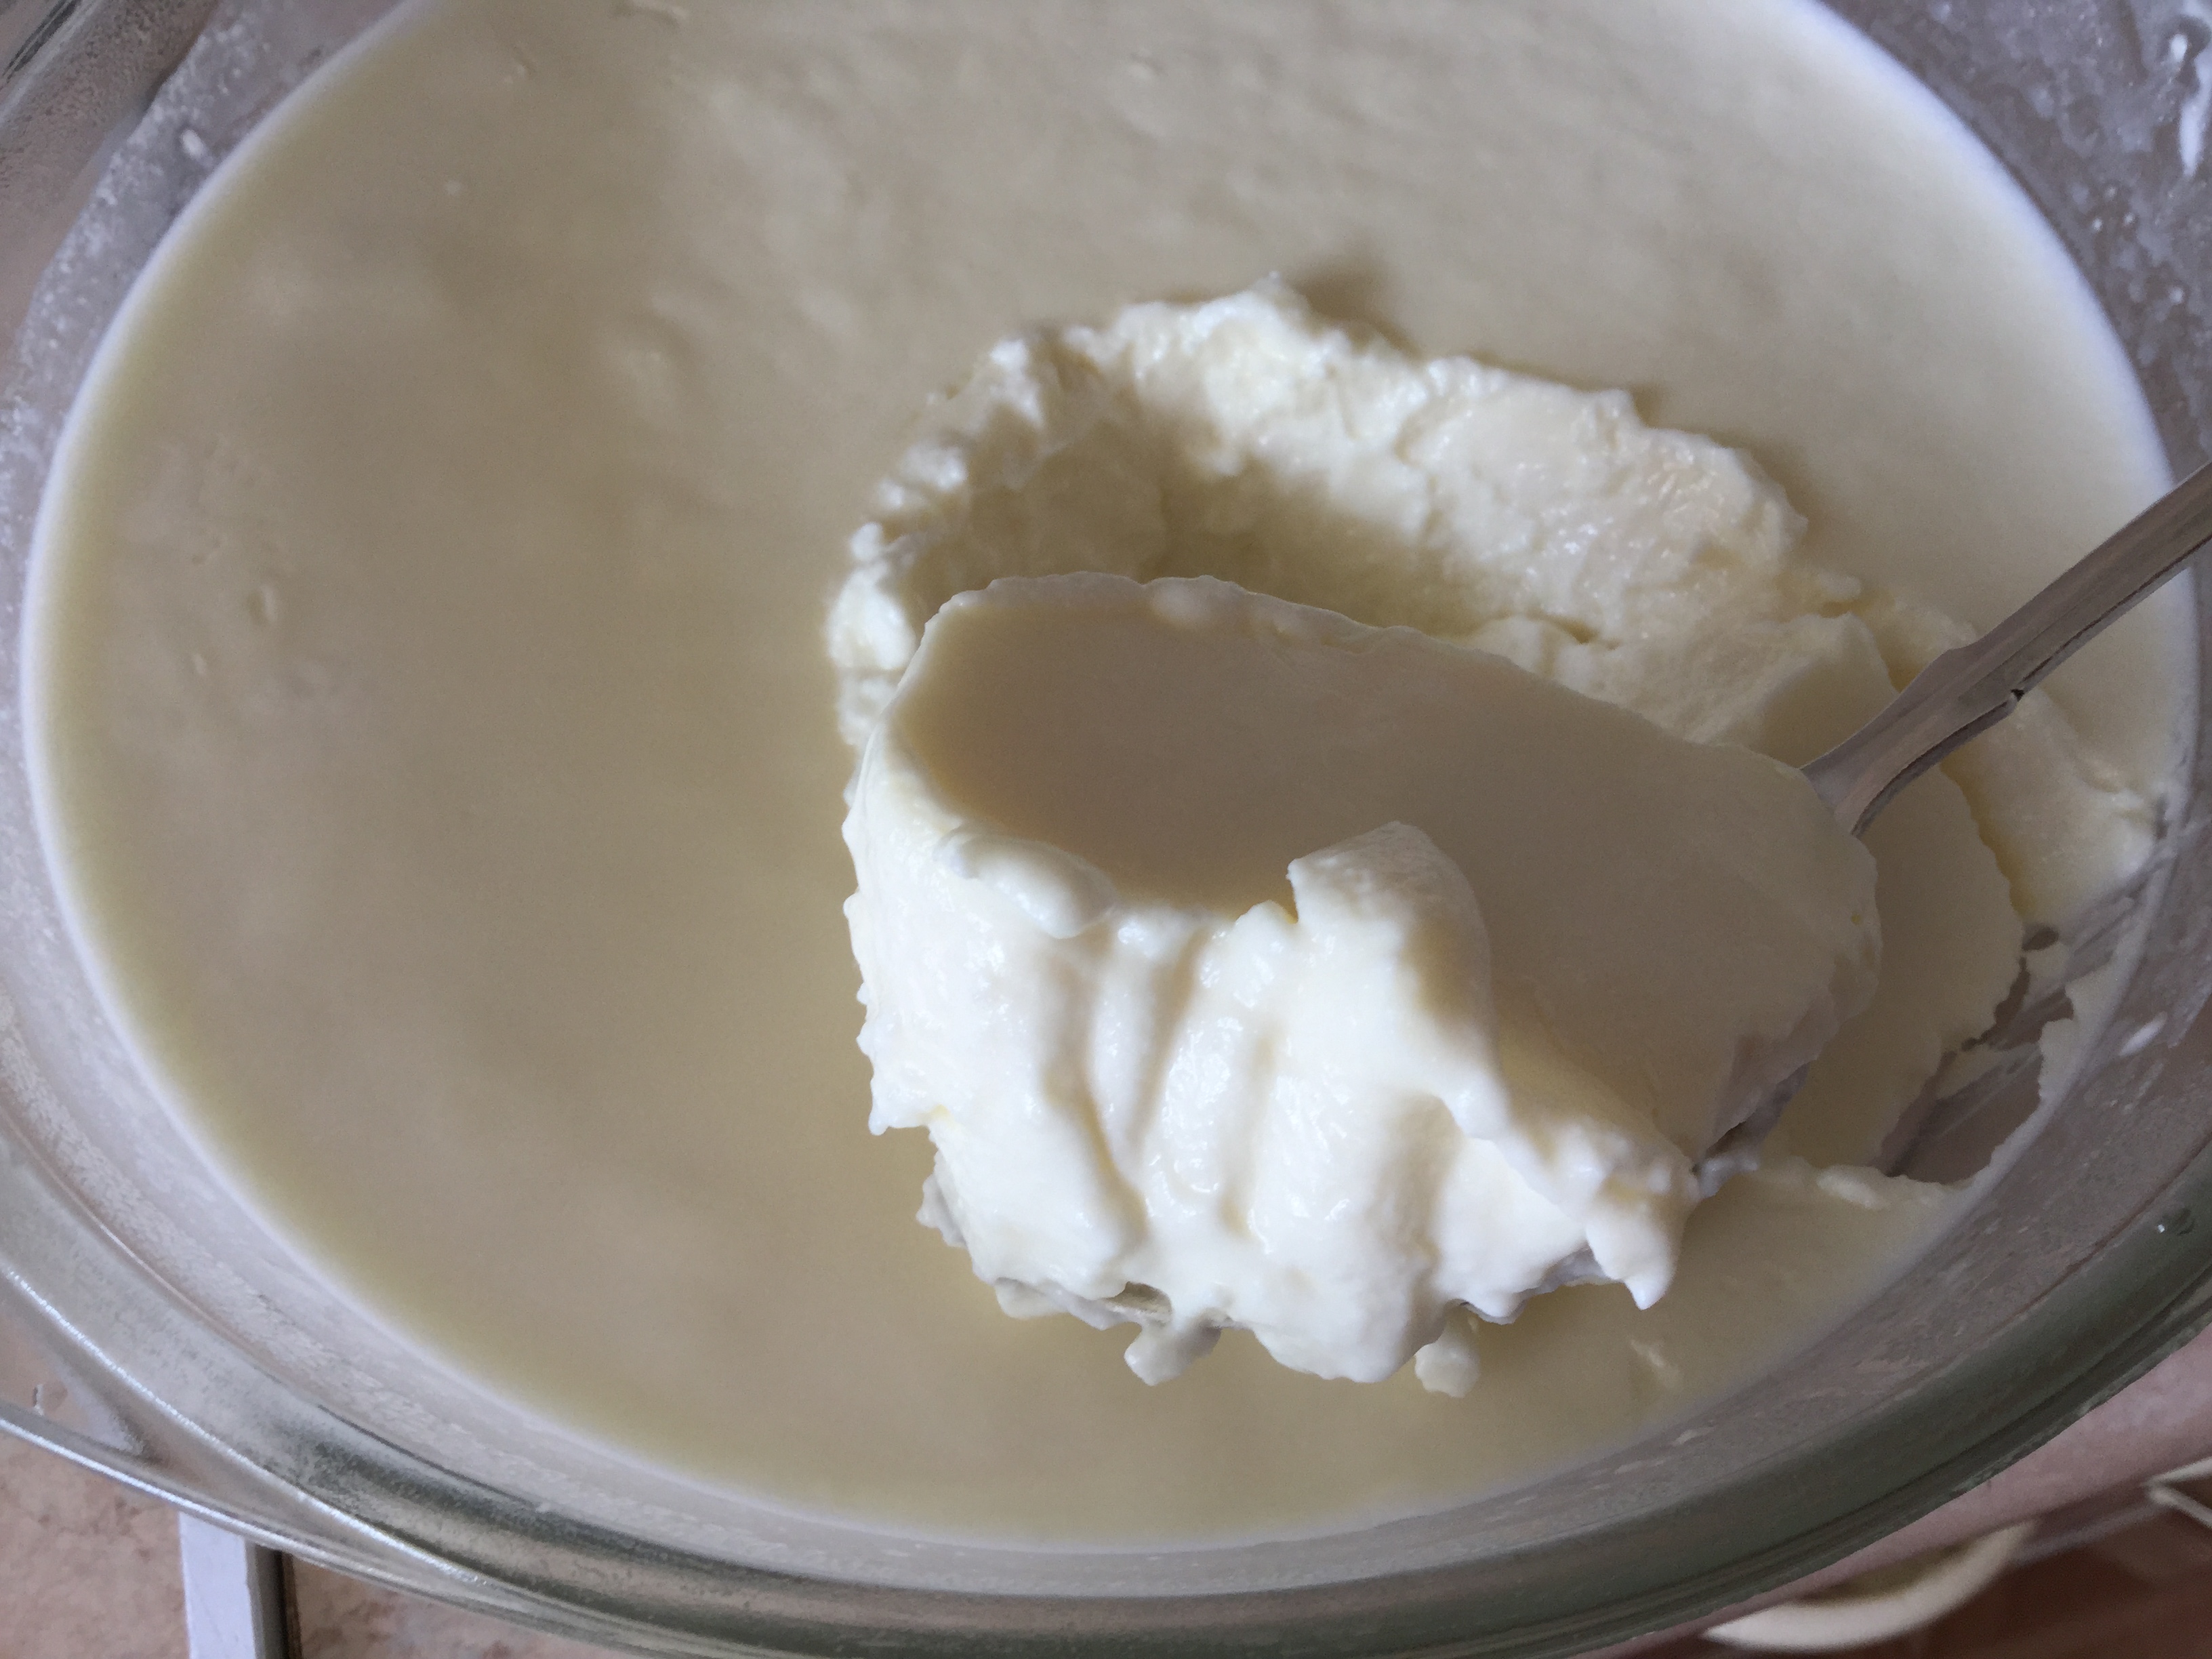 Joghurt desszert (rajzfilm, joghurtkészítő) - nyári étel gyerekeknek és felnőtteknek